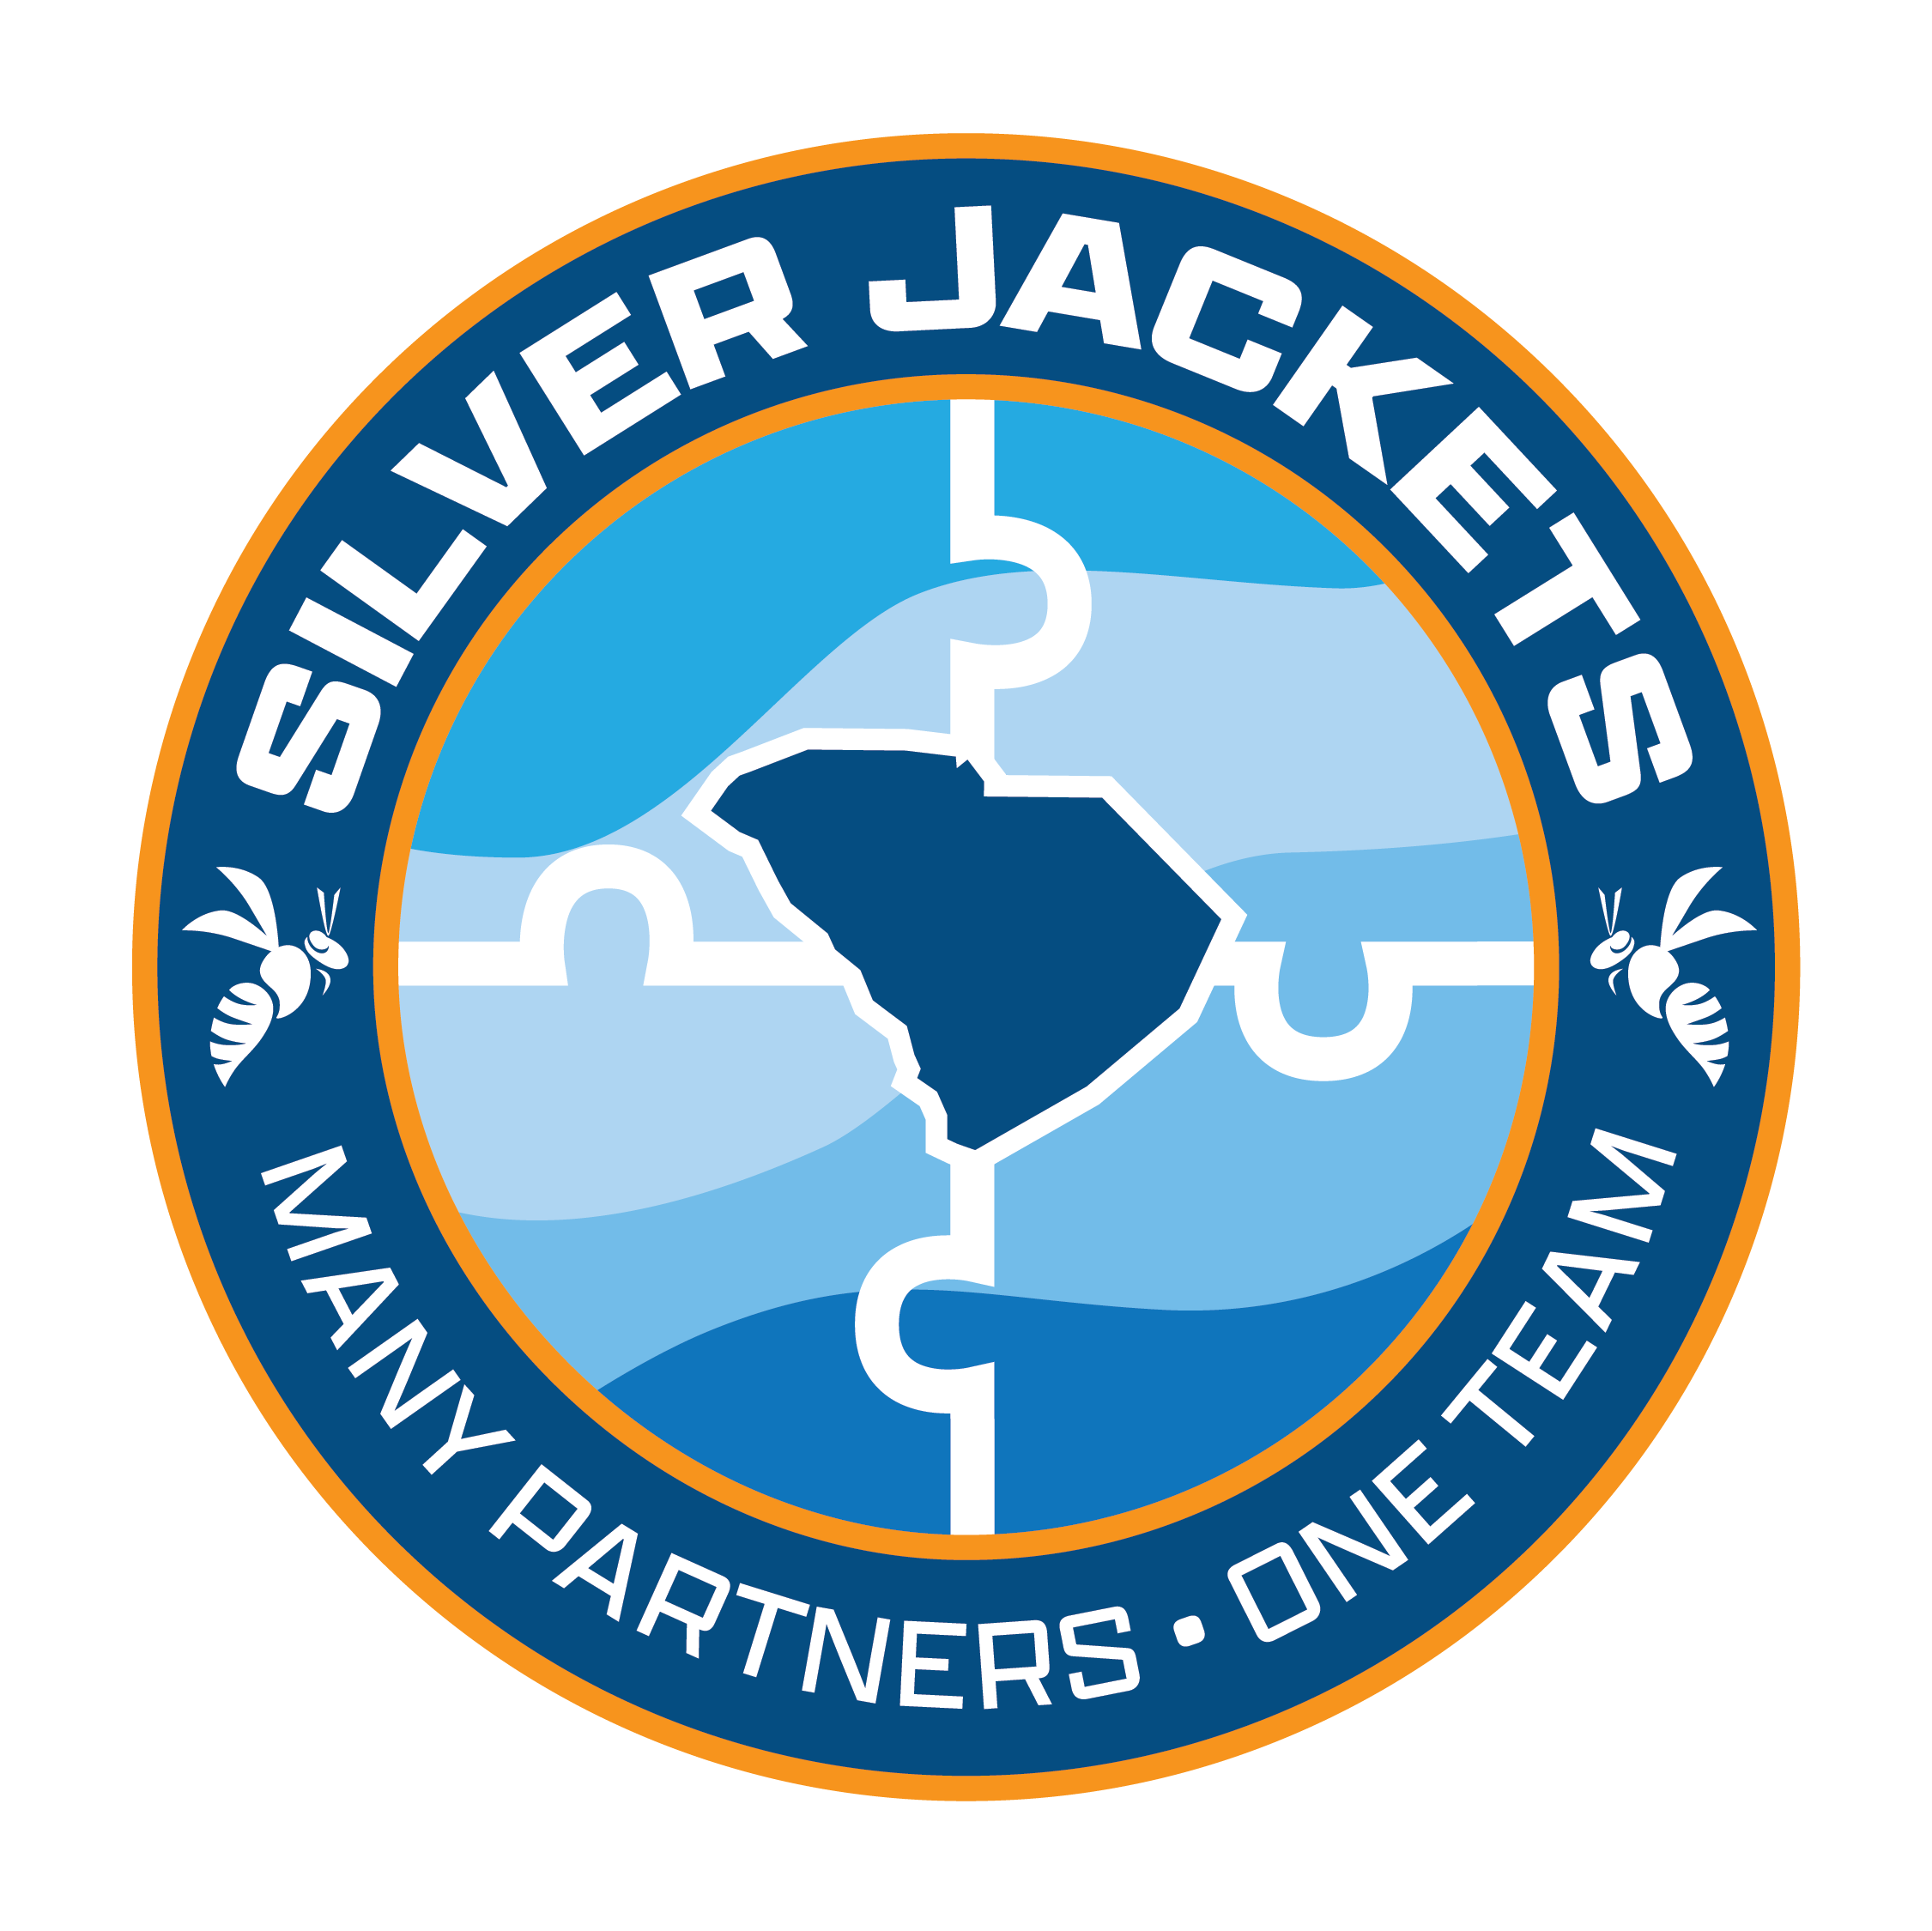 South Carolina Silver Jackets logo